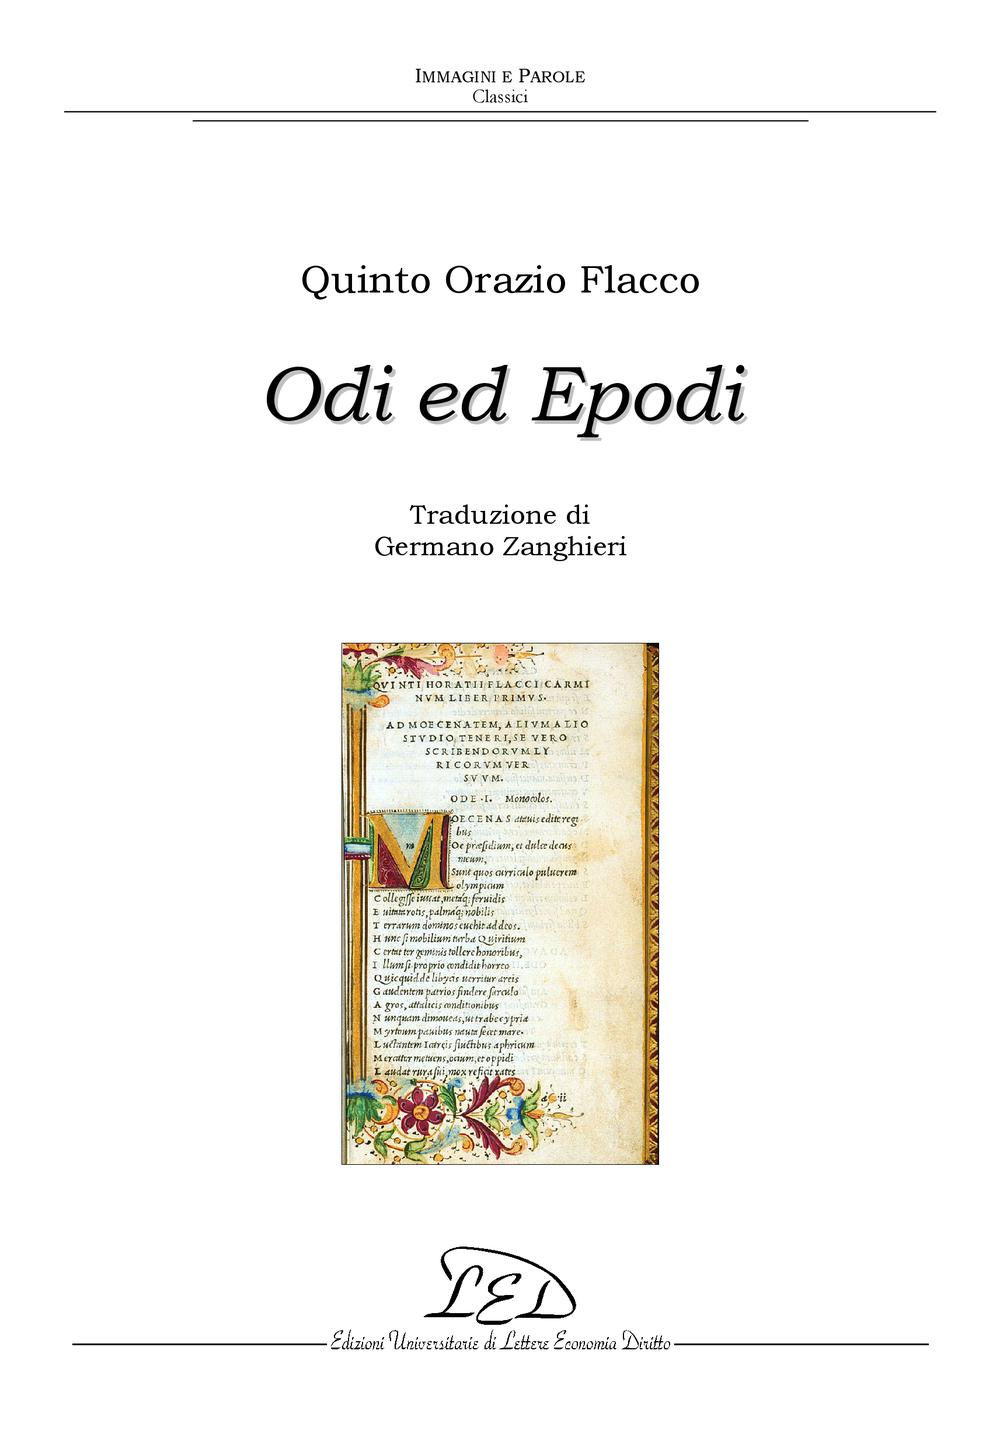 Odi ed Epodi - Quinto Orazio Flacco, Germano Zanghieri